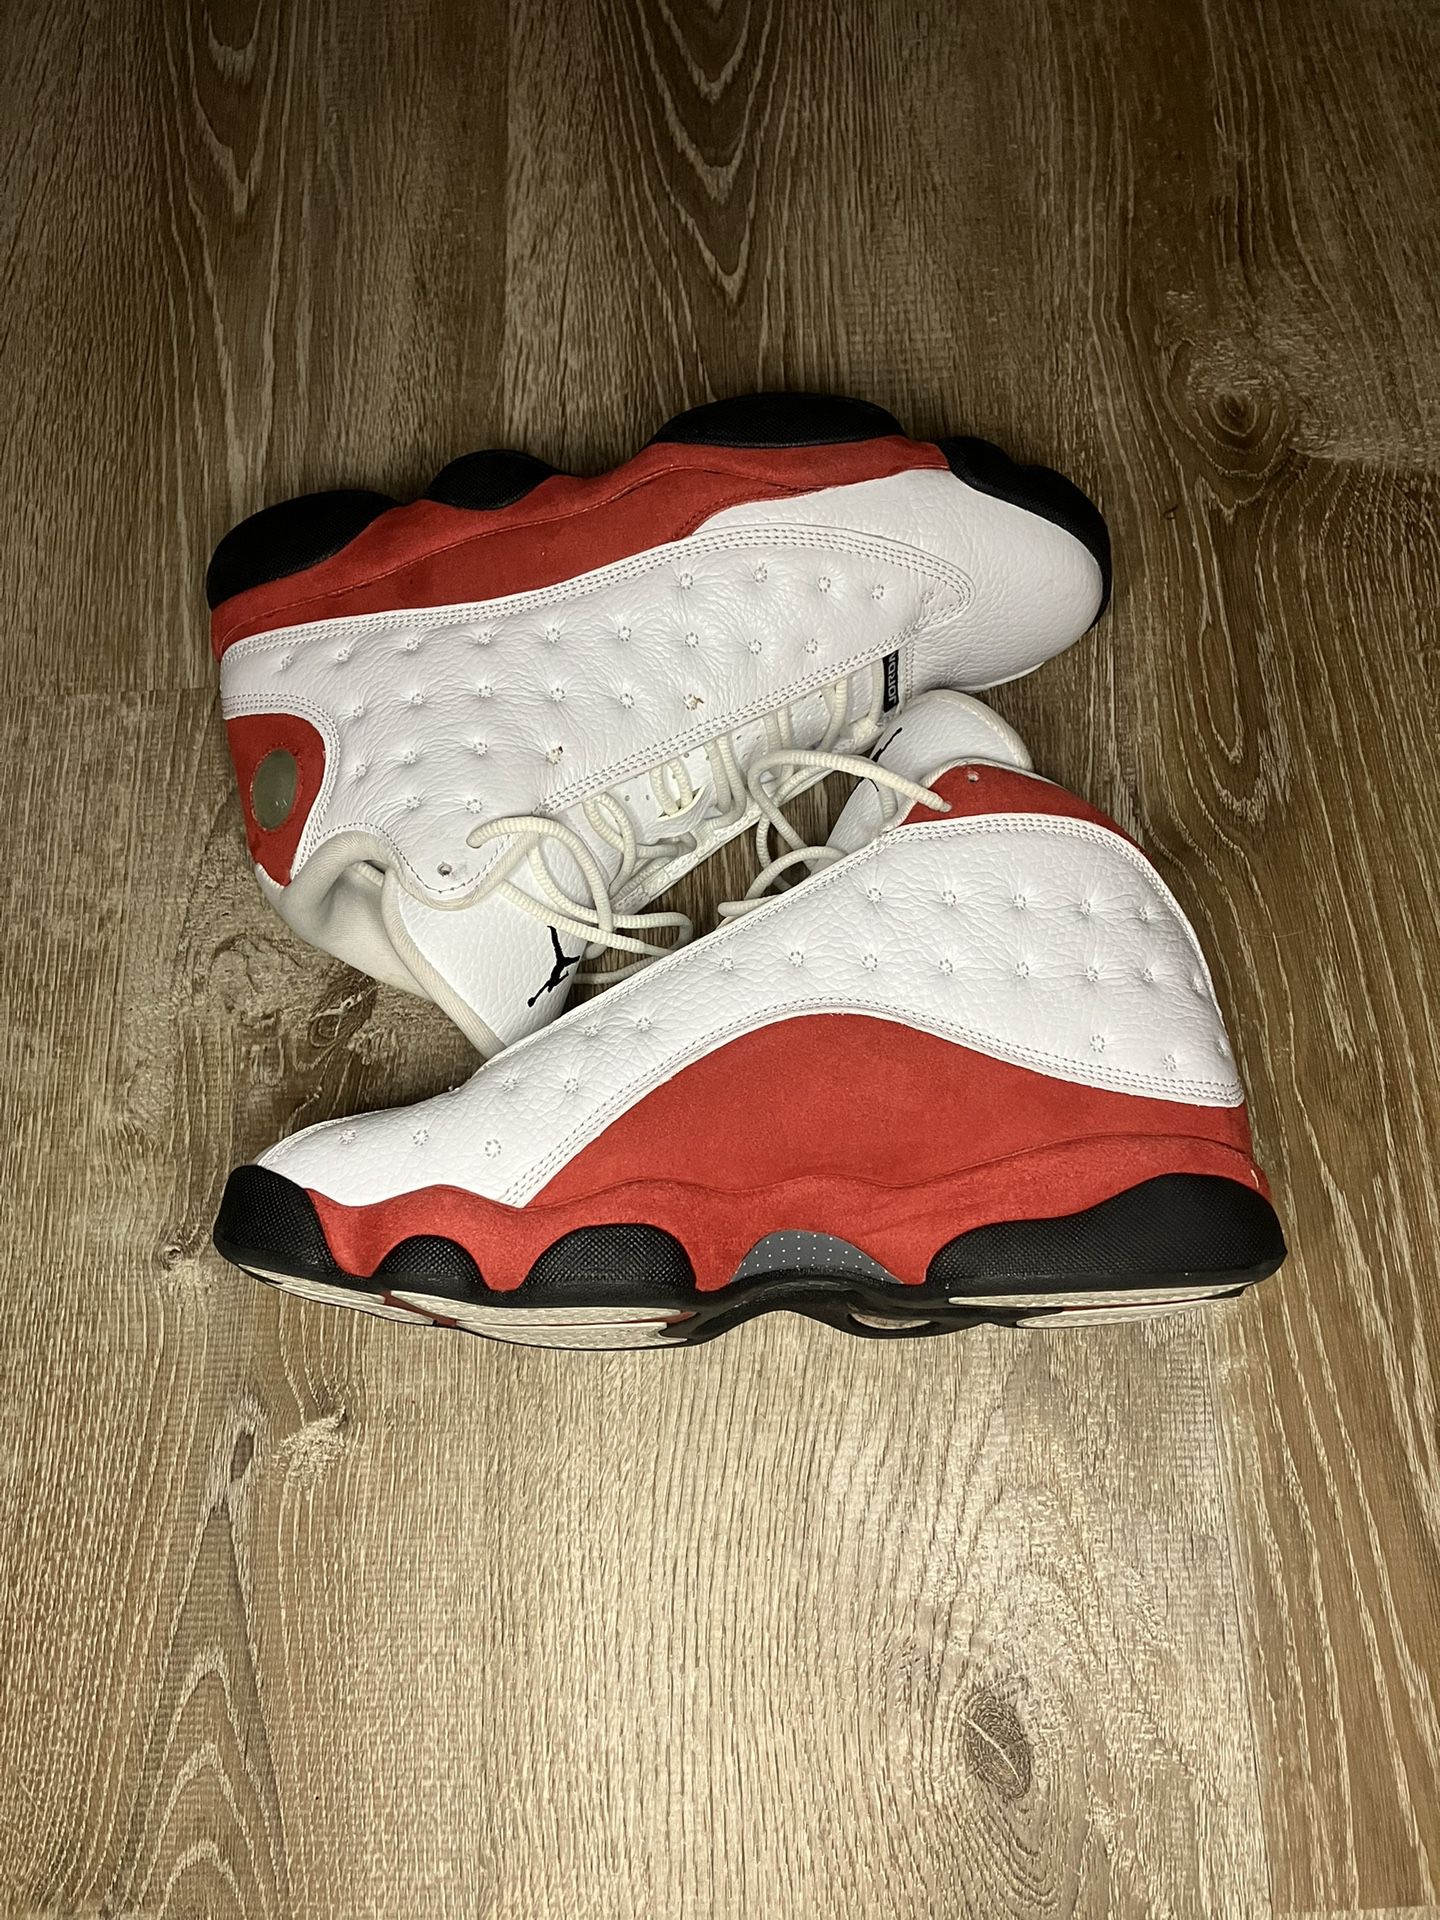 Jordan 13 Retro OG Chicago (2017)- Size 9